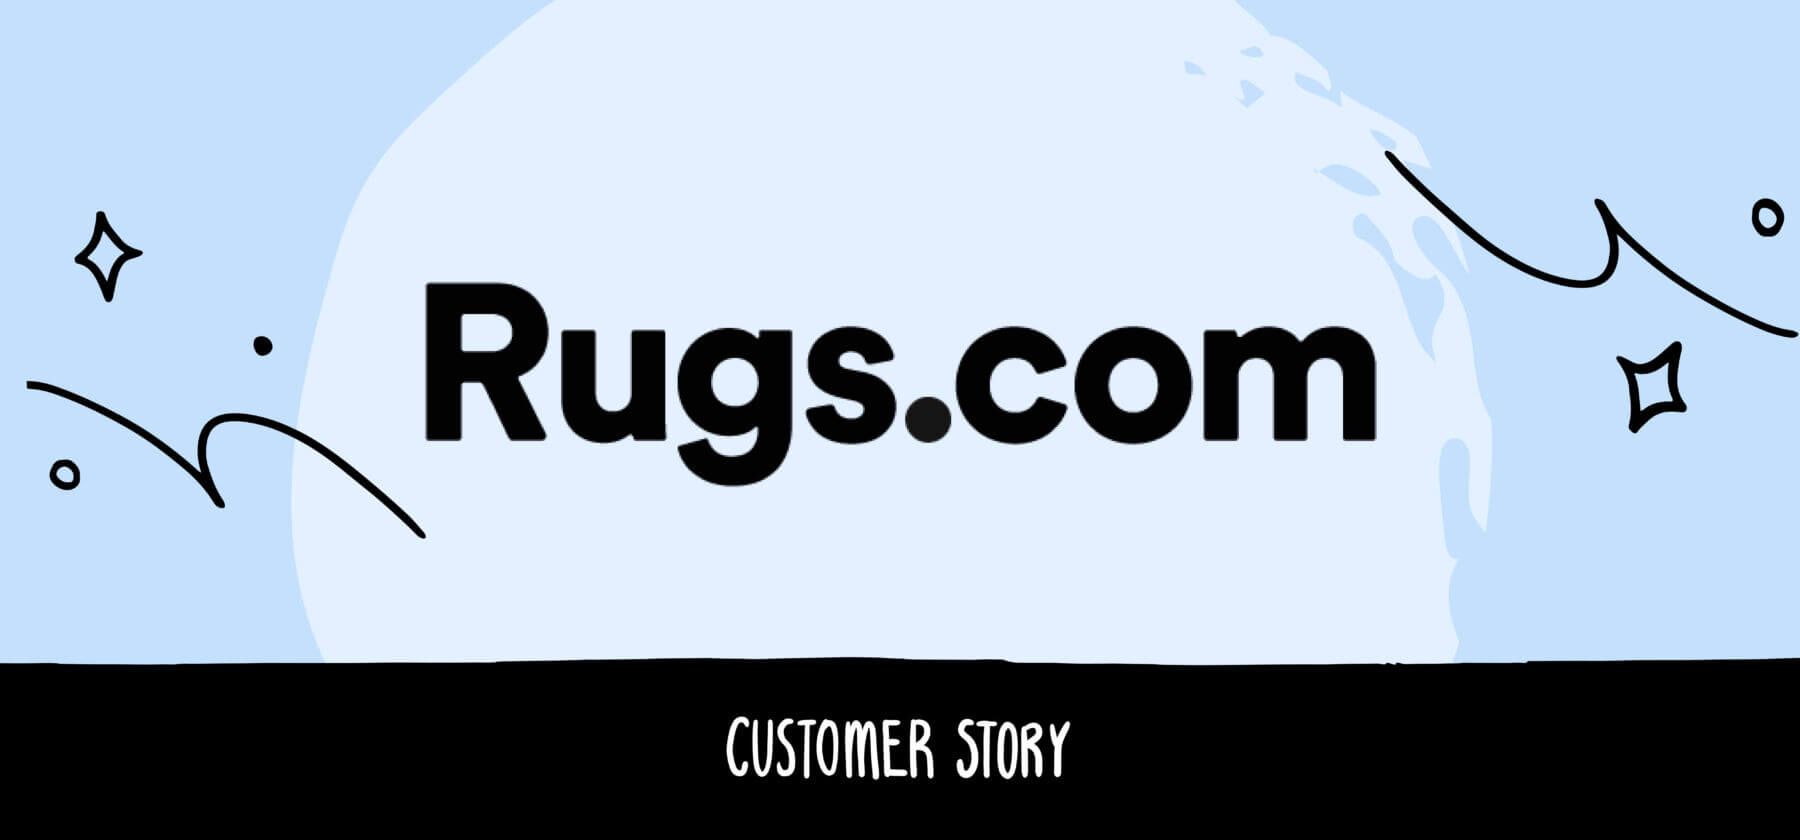 Rugs.com customer story hero